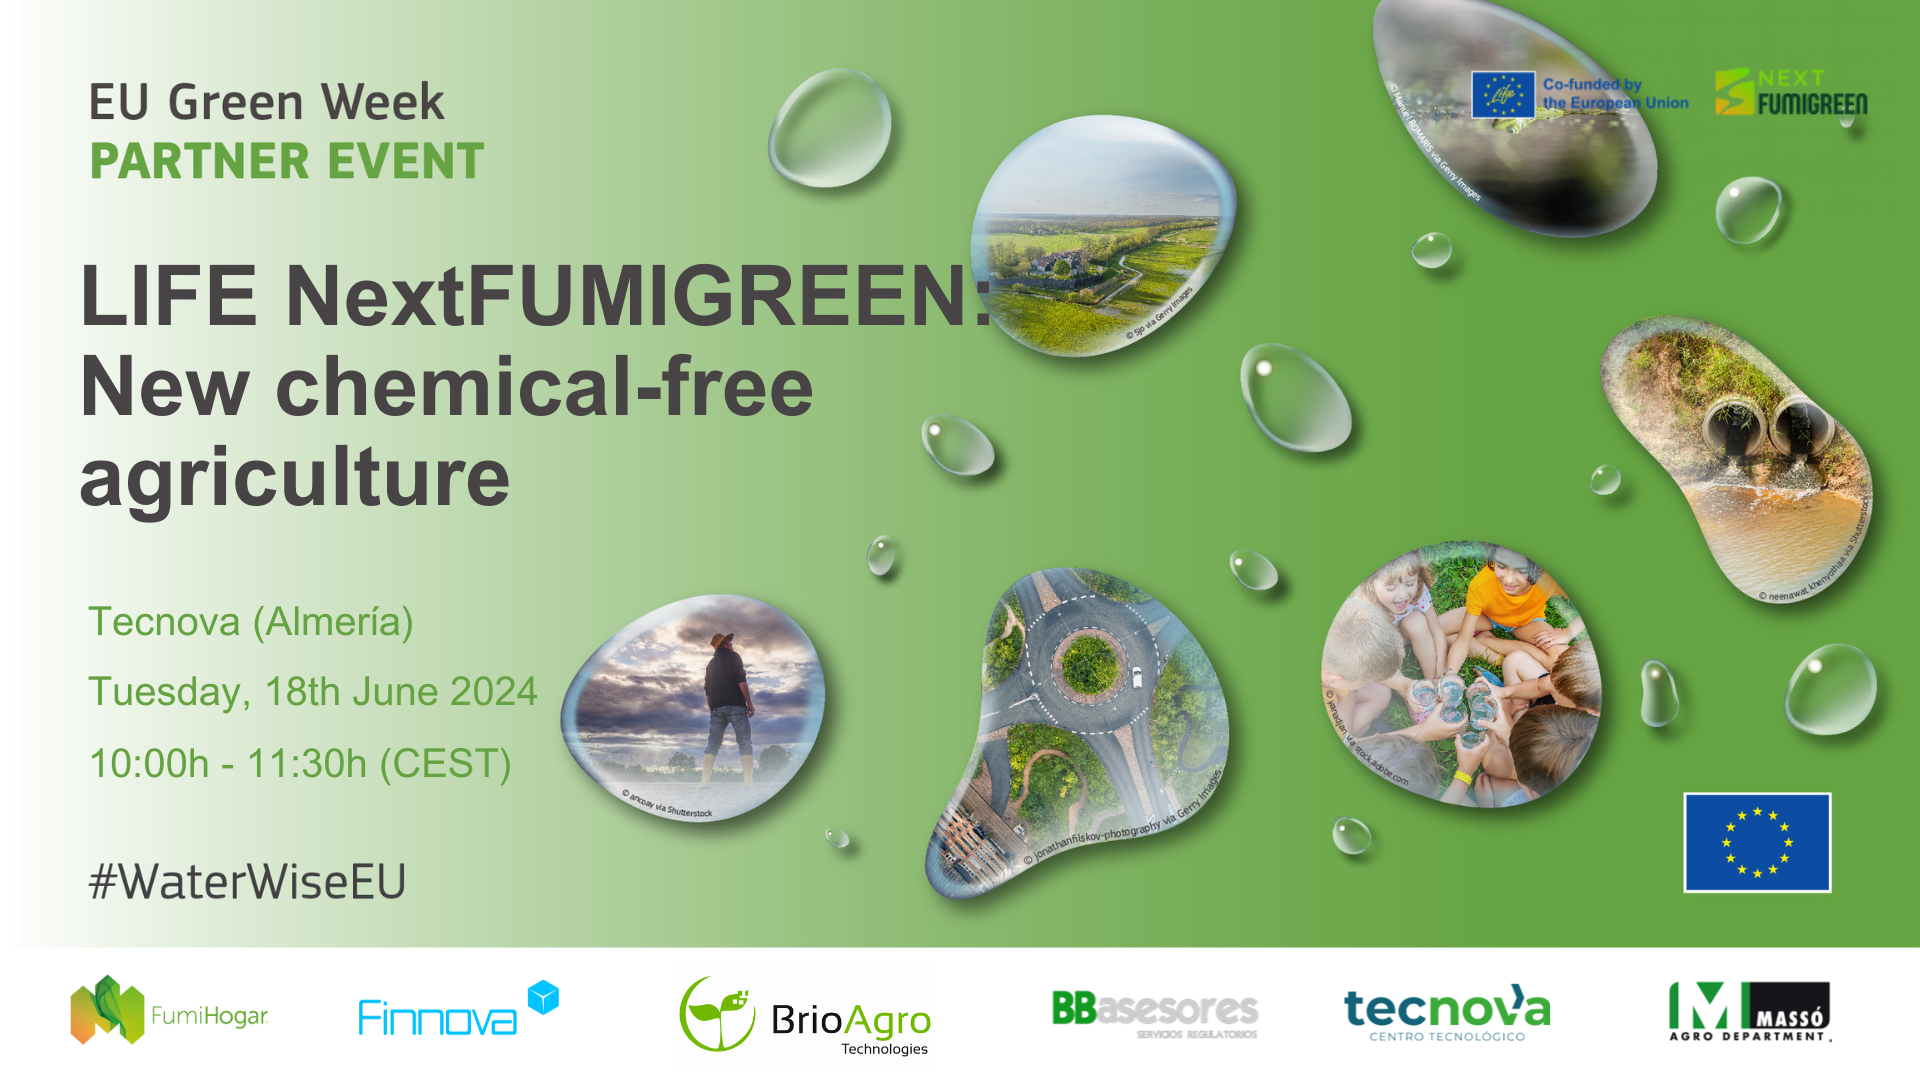 “Nueva Agricultura Libre de Tóxicos”. LIFE NextFUMIGREEN organiza un evento híbrido  en la sede de Tecnova (Almería) con motivo de la European Green Week